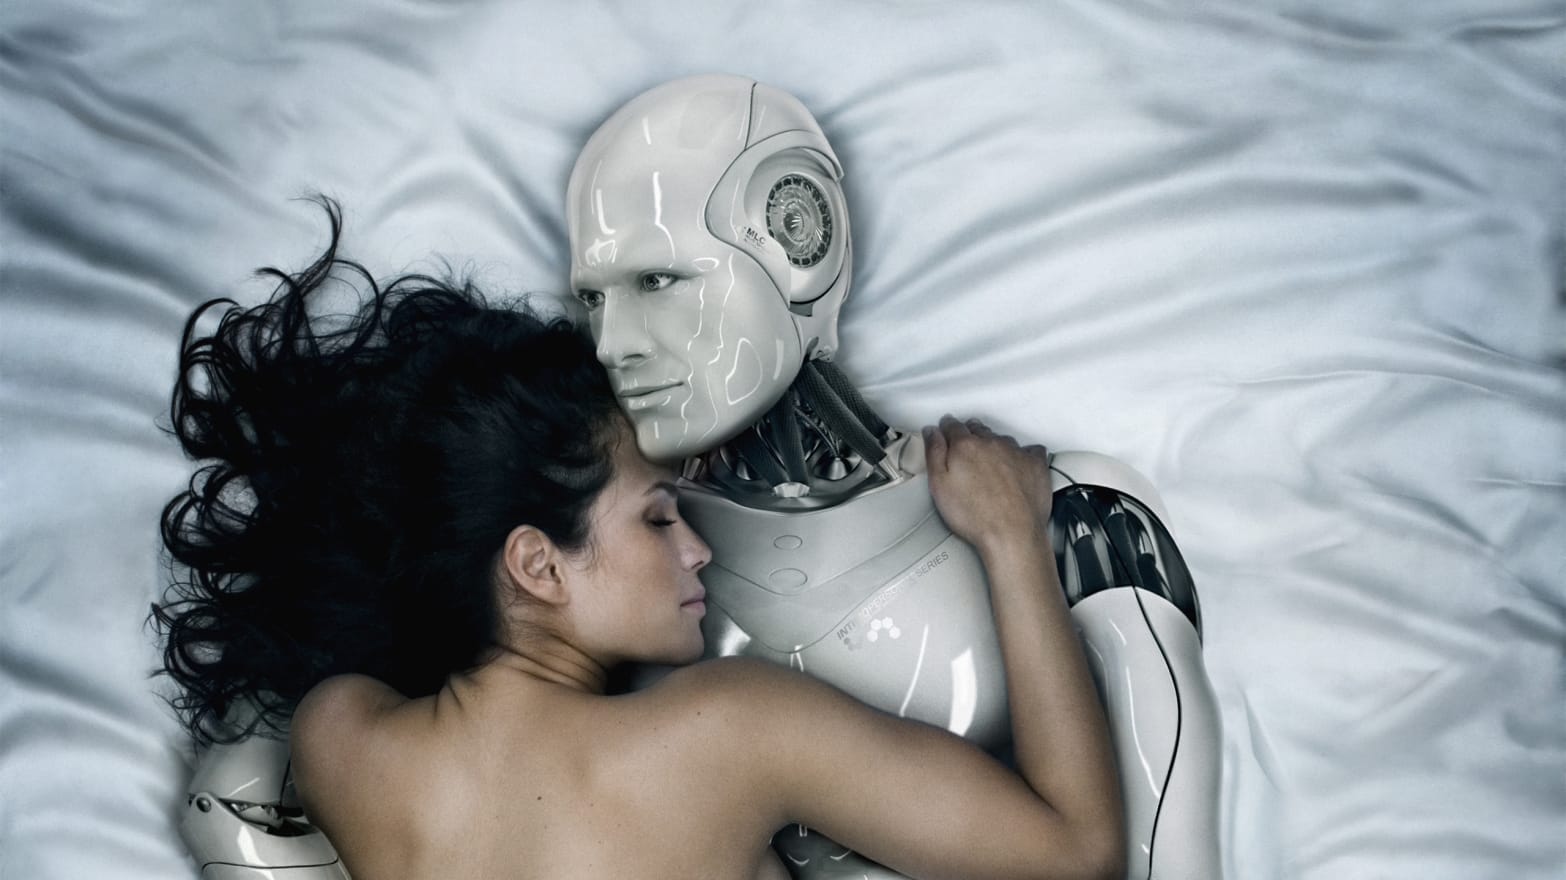 Xxx 2050com - Sex In 2050: More Robots, Less Humans